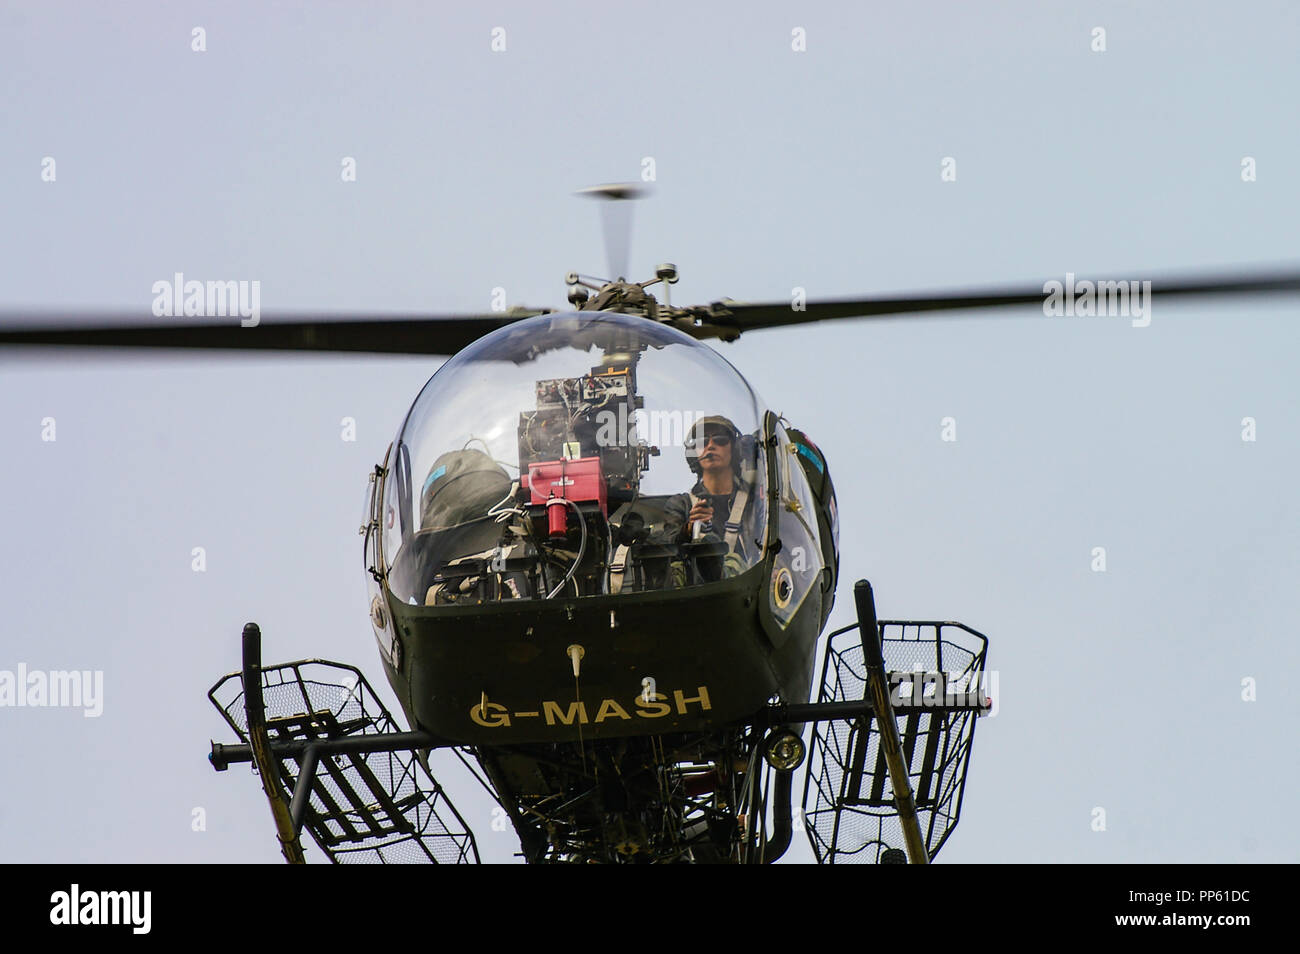 Bell 47G elicottero G-MASH come rappresentante l'elicottero di evacuazione medica utilizzato nel PROGRAMMA televisivo MASH della guerra coreana. Pilota Tracy Martin Foto Stock